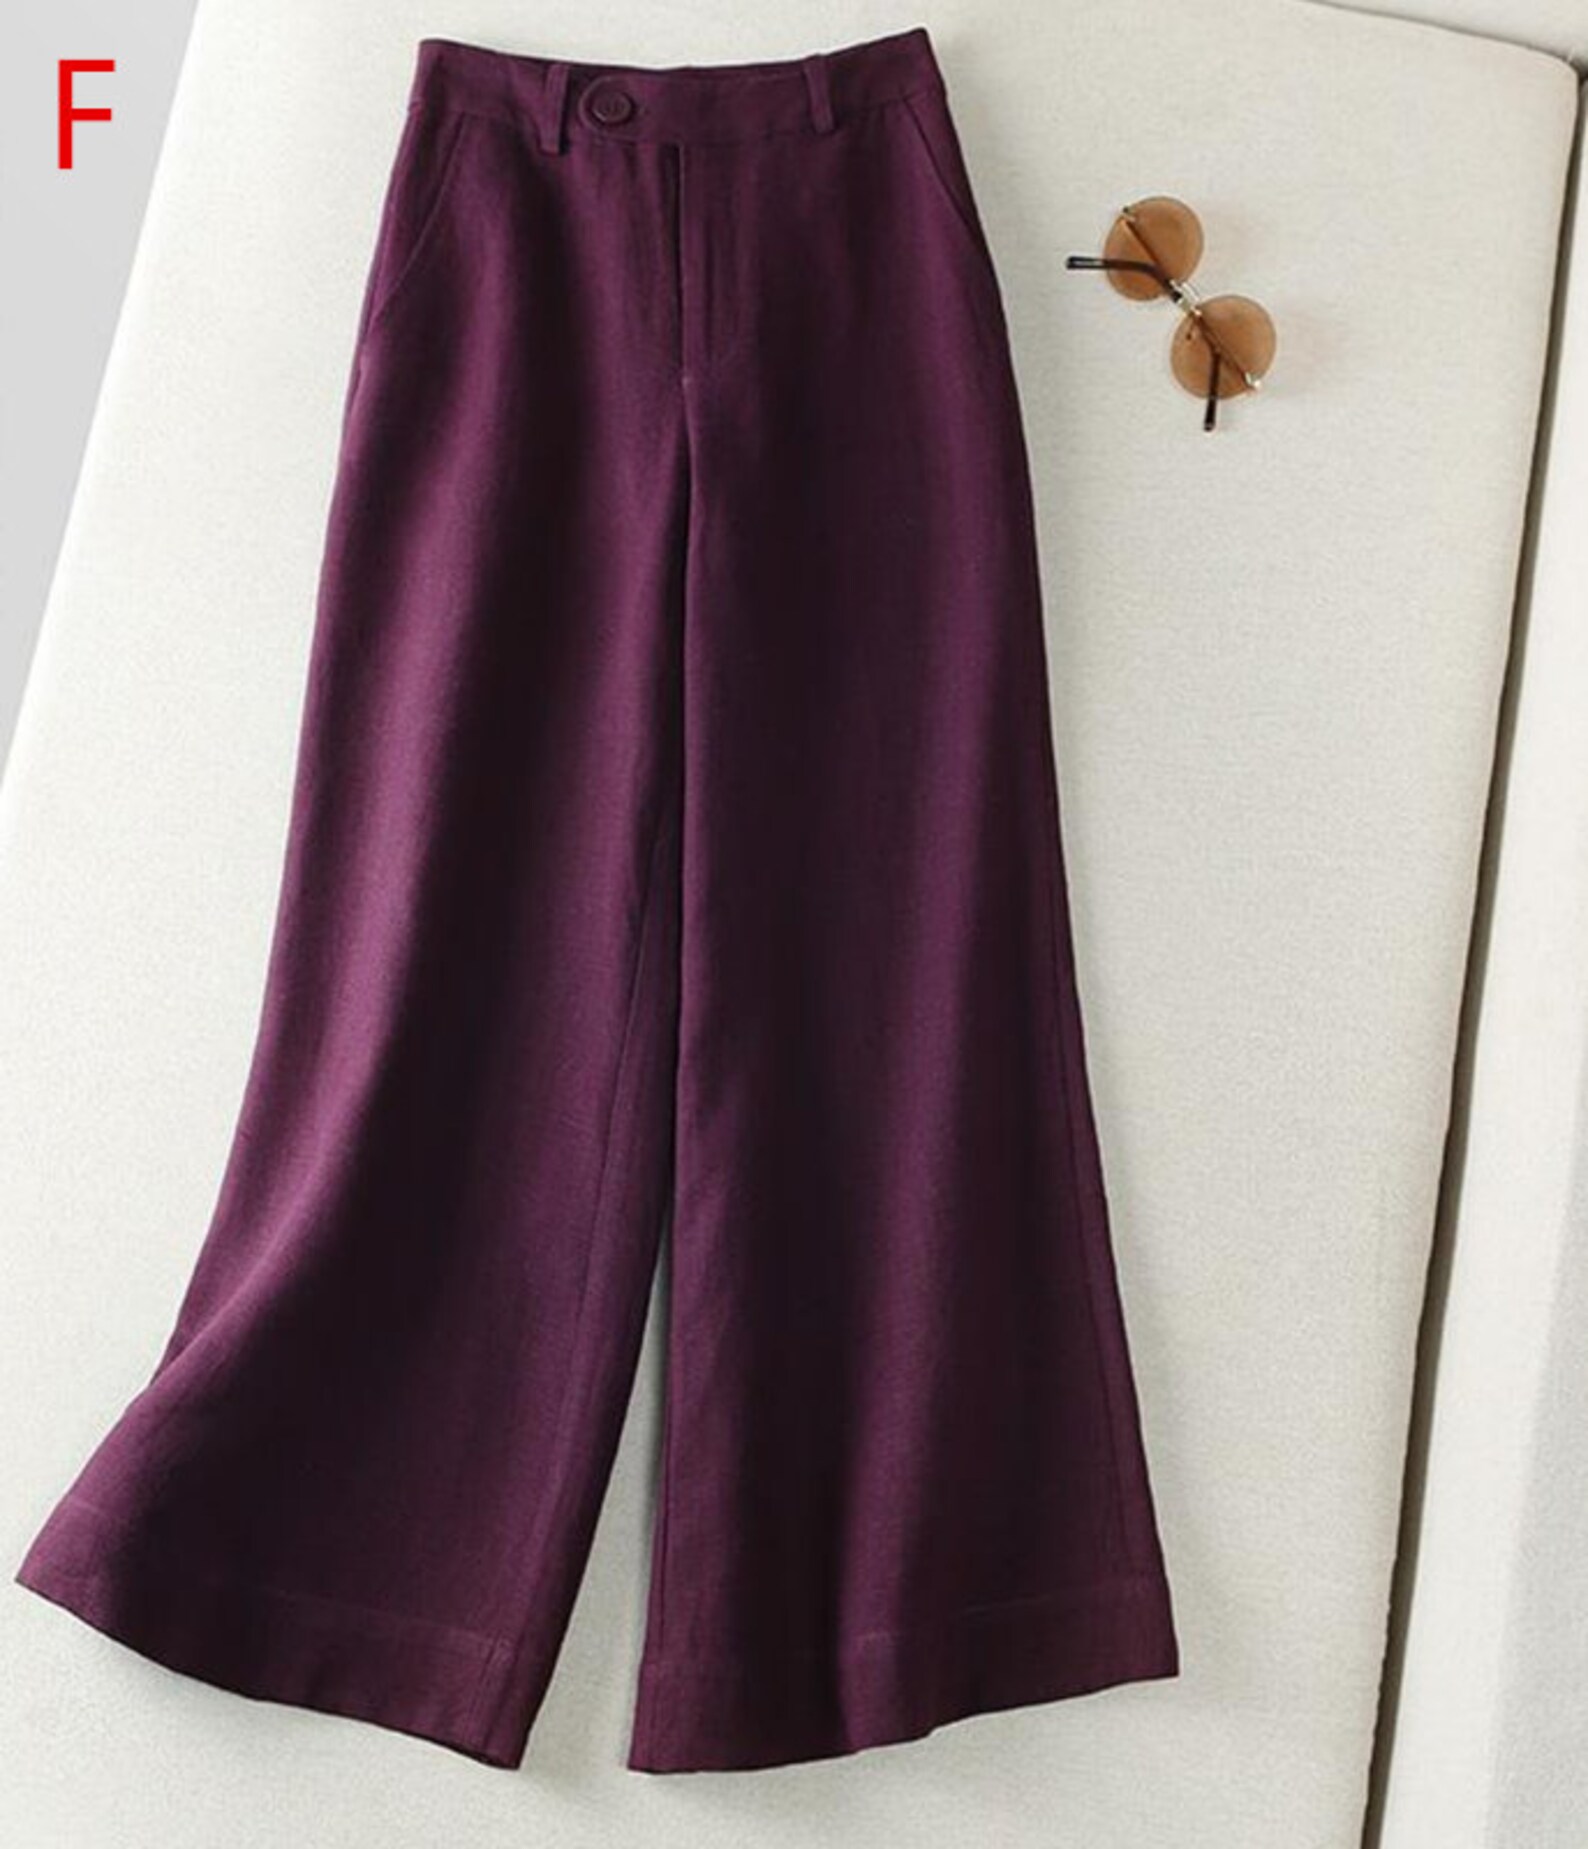 Floor pants wide-leg cotton linen pants high-waist trousers | Etsy